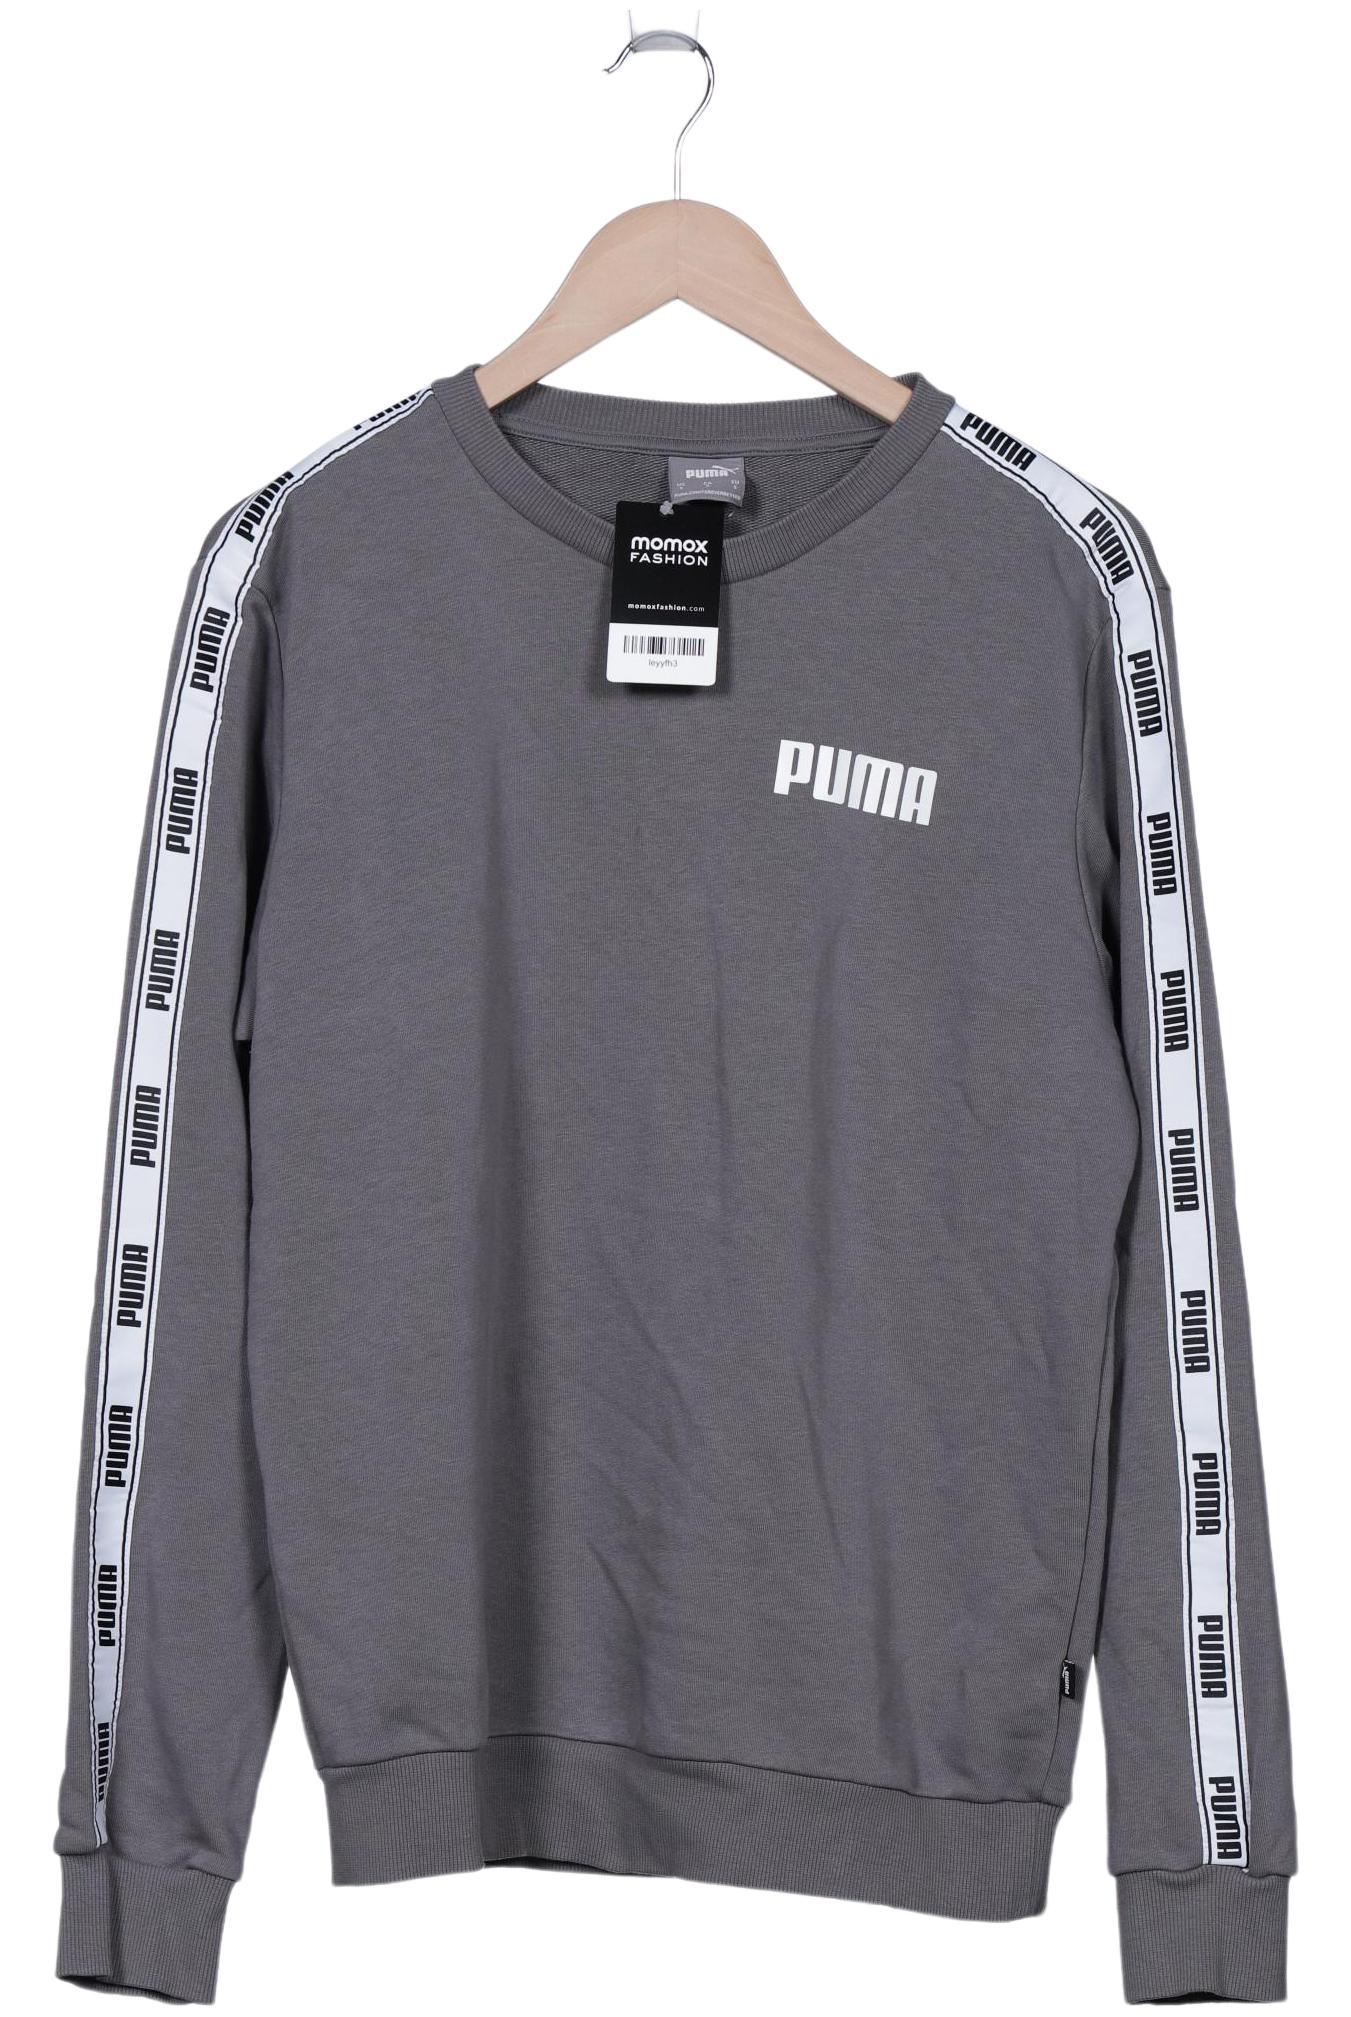 Puma Herren Sweatshirt, grau, Gr. 46 von Puma